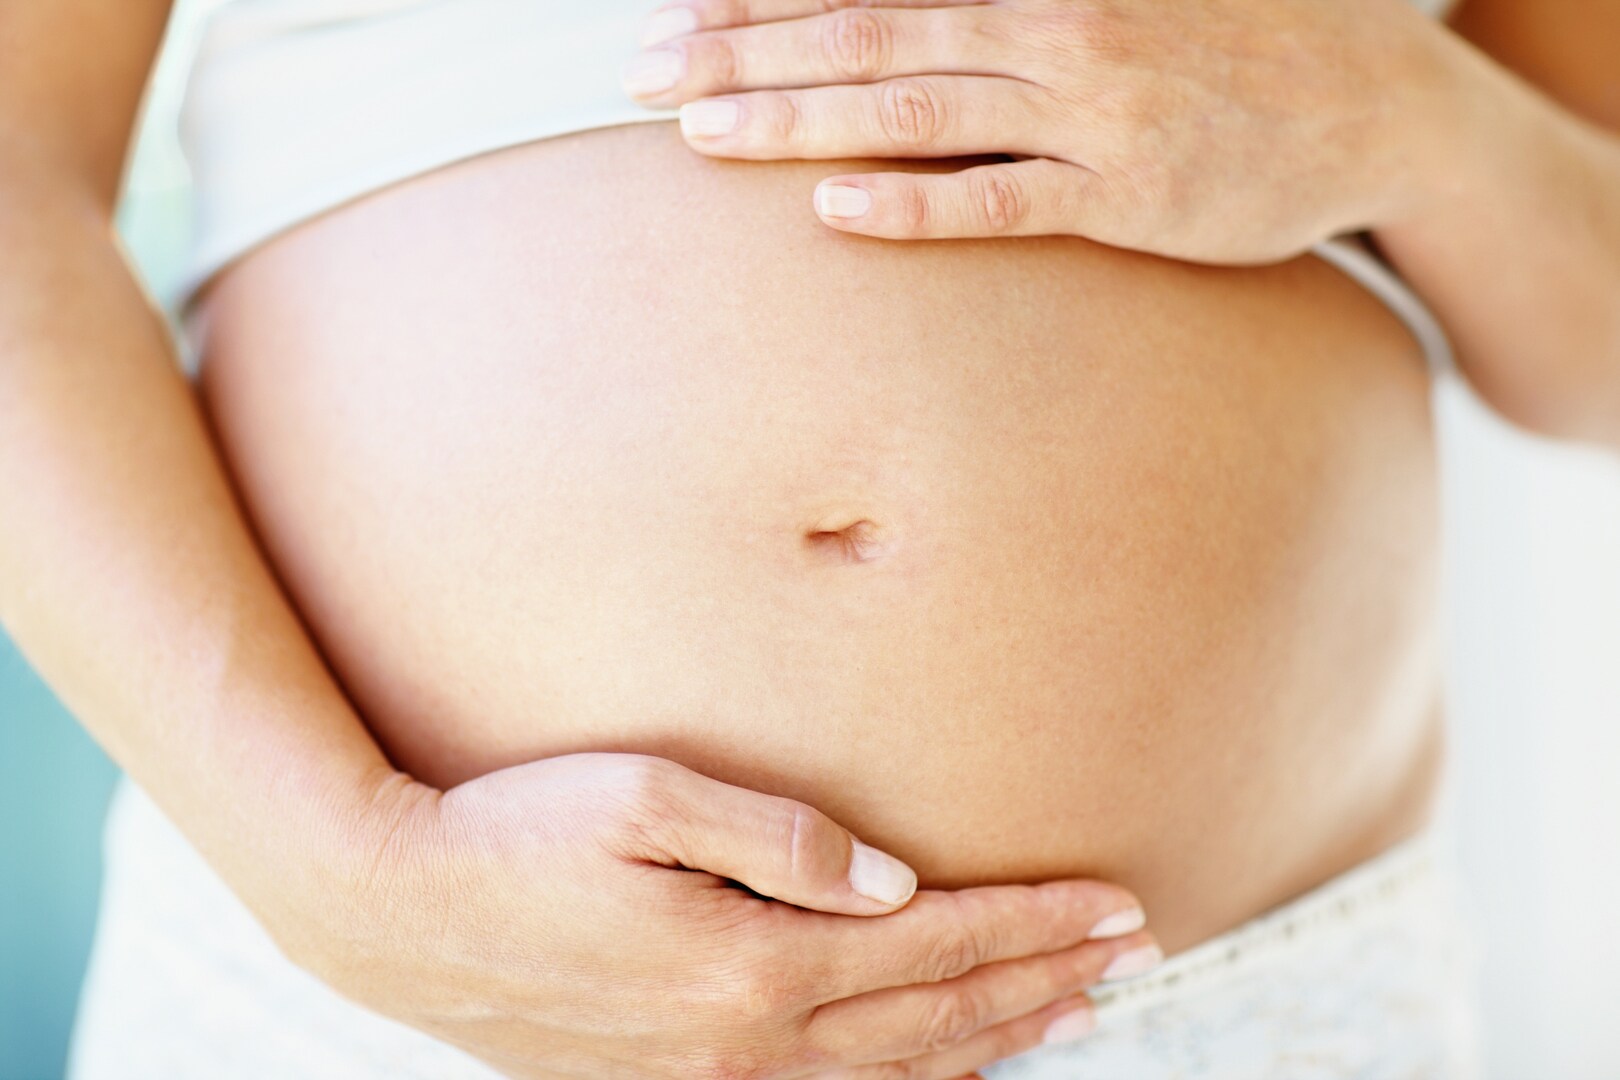 ‘Geassisteerde voortplanting is geen sprookje’: peri-prenatale cursus pakt misvattingen bij wensouders aan